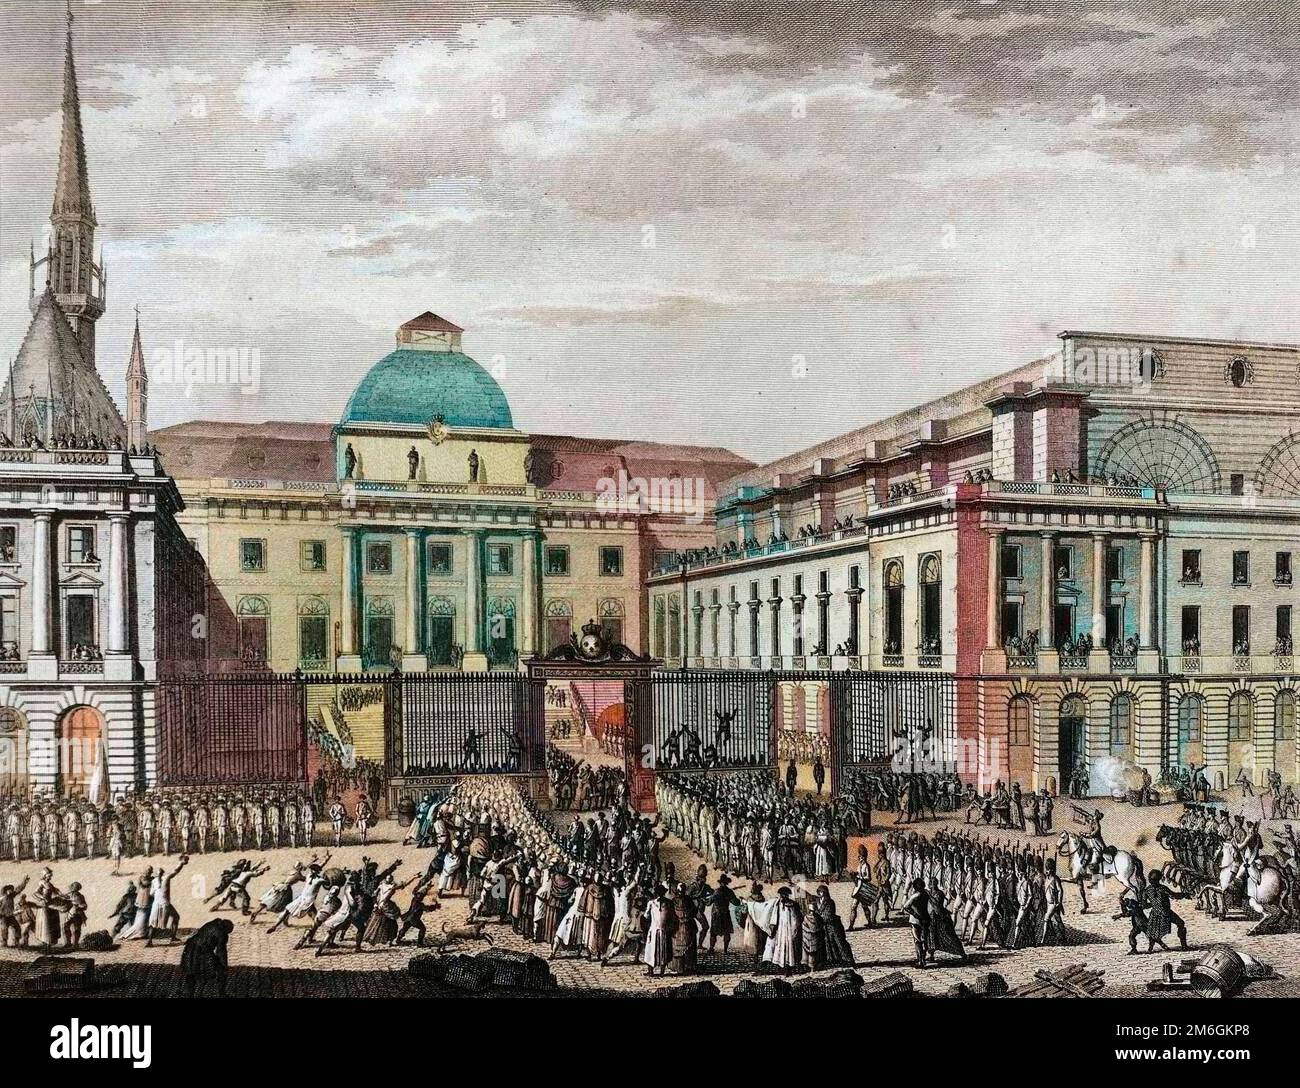 Rivoluzione francaise de 1789 - Rivoluzione francese: Mairie de Paris, parlement en novembre 1790 sur l'ile de la Cite preside par Jean Baptiste Gaspard Bochart de Saron (1730-1794). Foto Stock